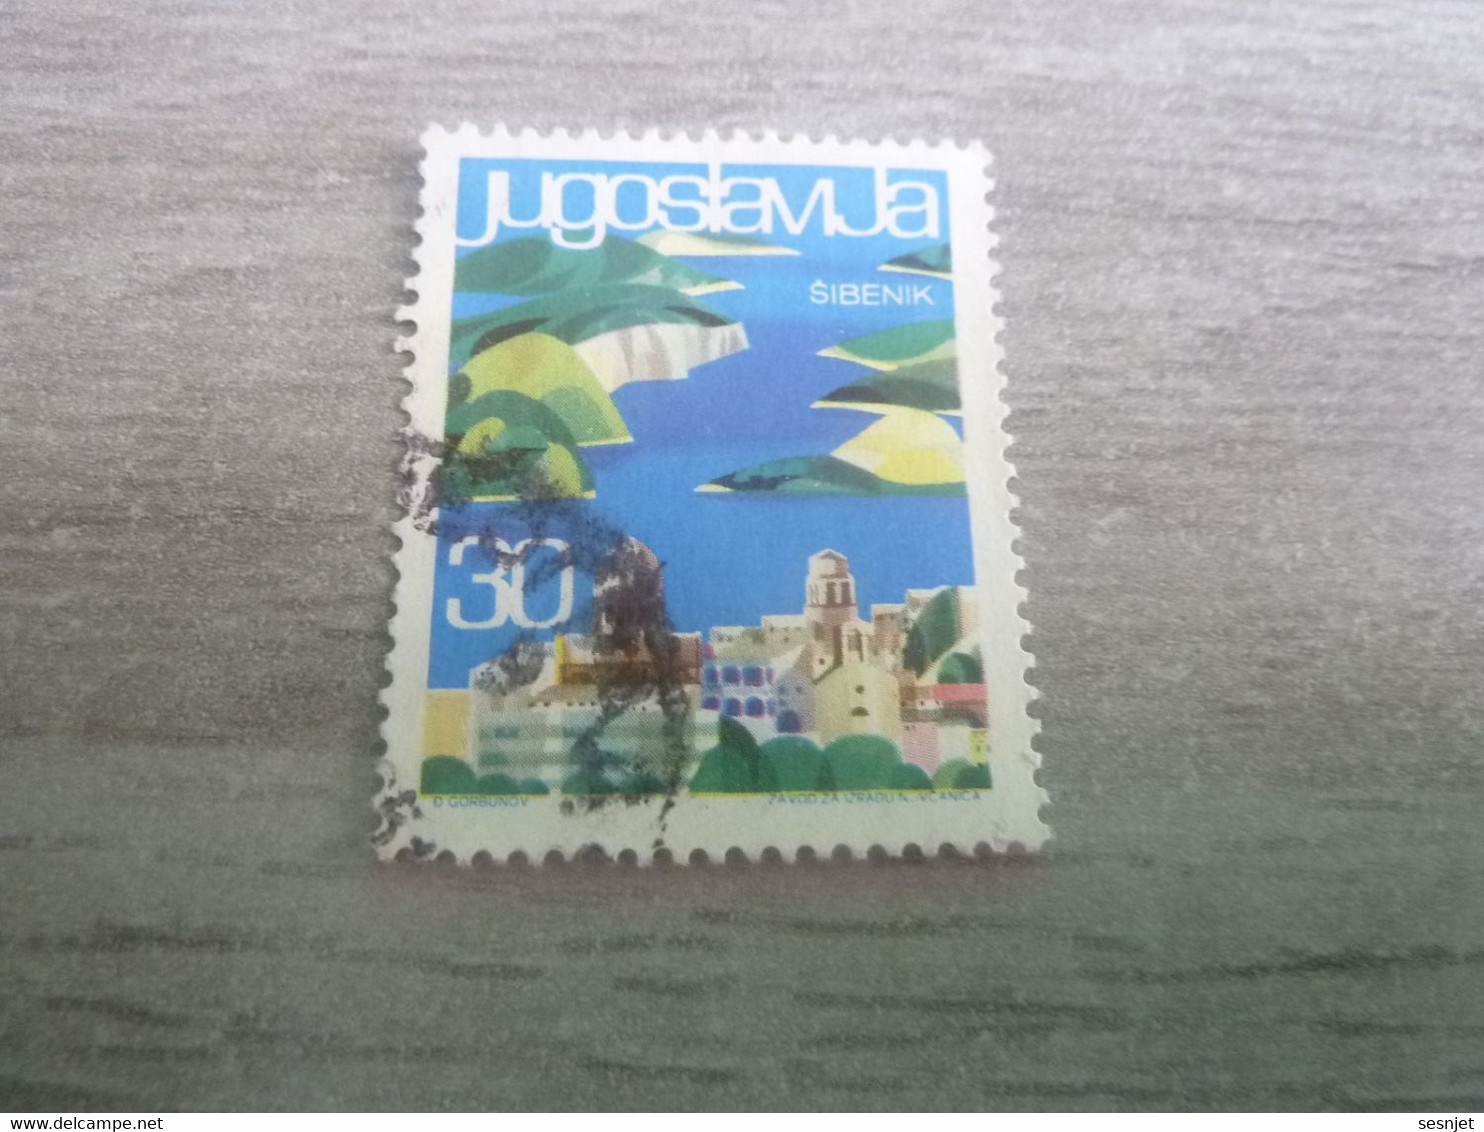 Jugoslavija - Sibenik - Val 30 - Multicolore - Oblitéré - - Usati